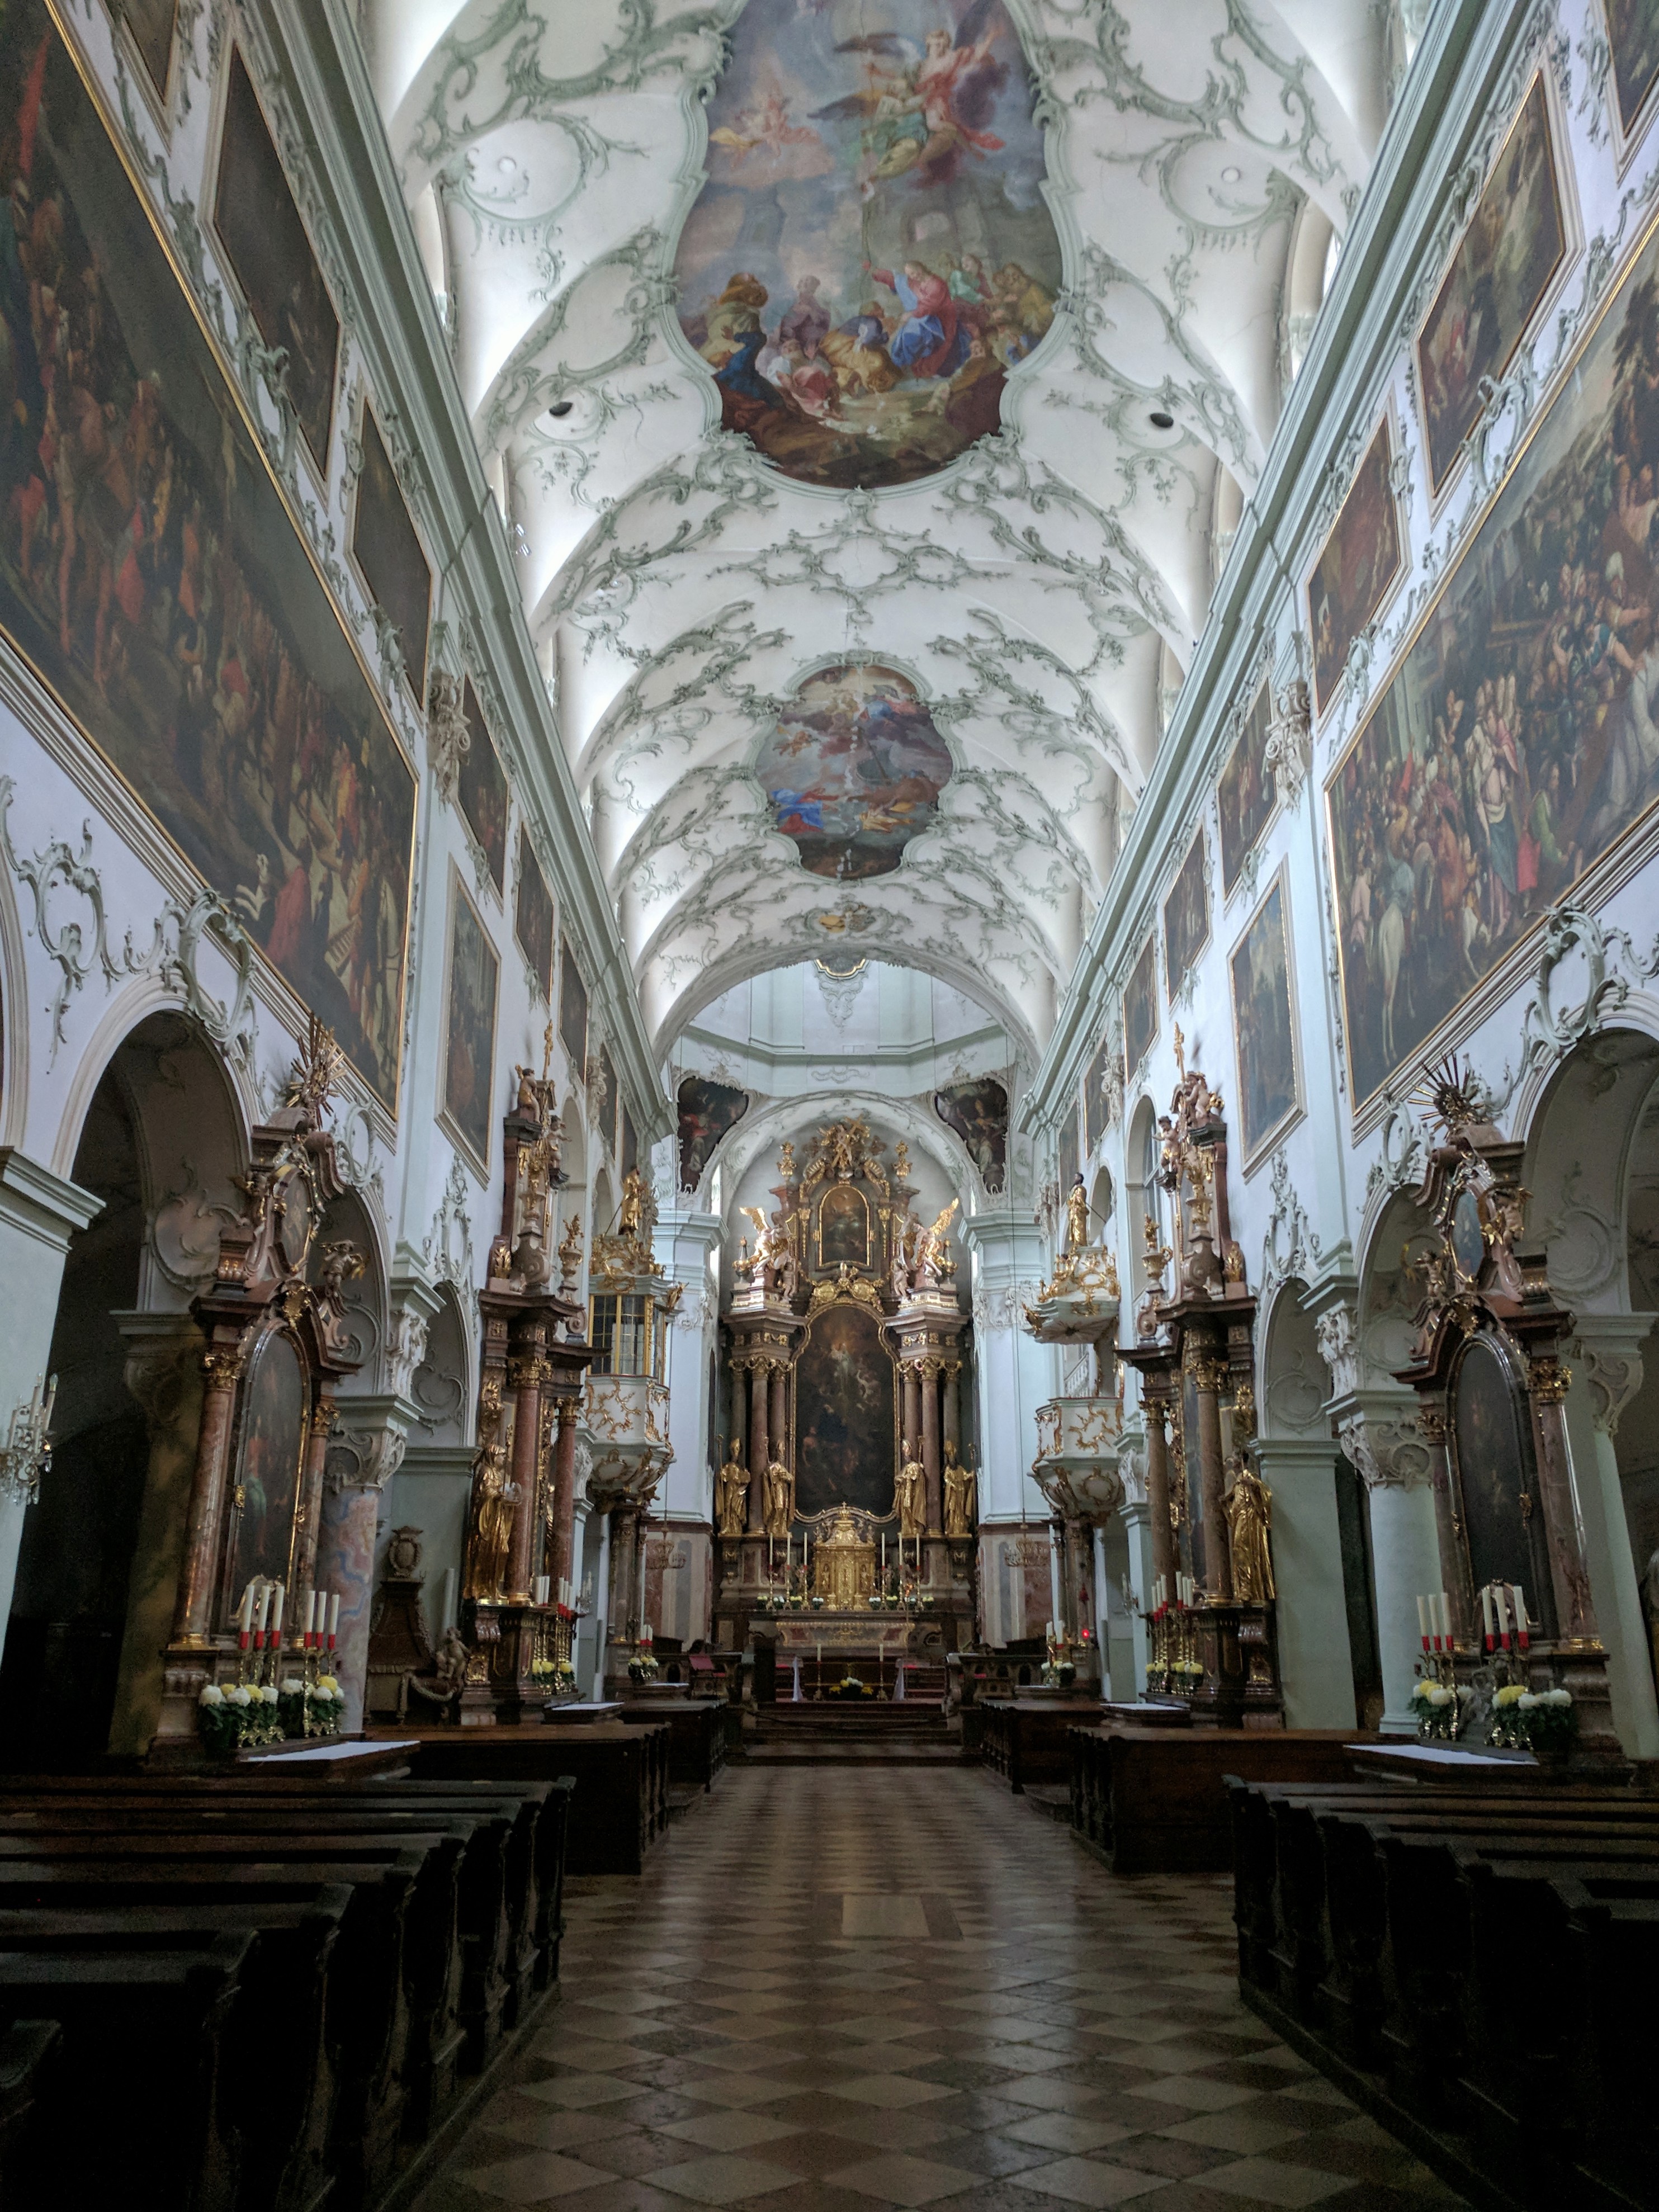 Saint Peter's Abbey